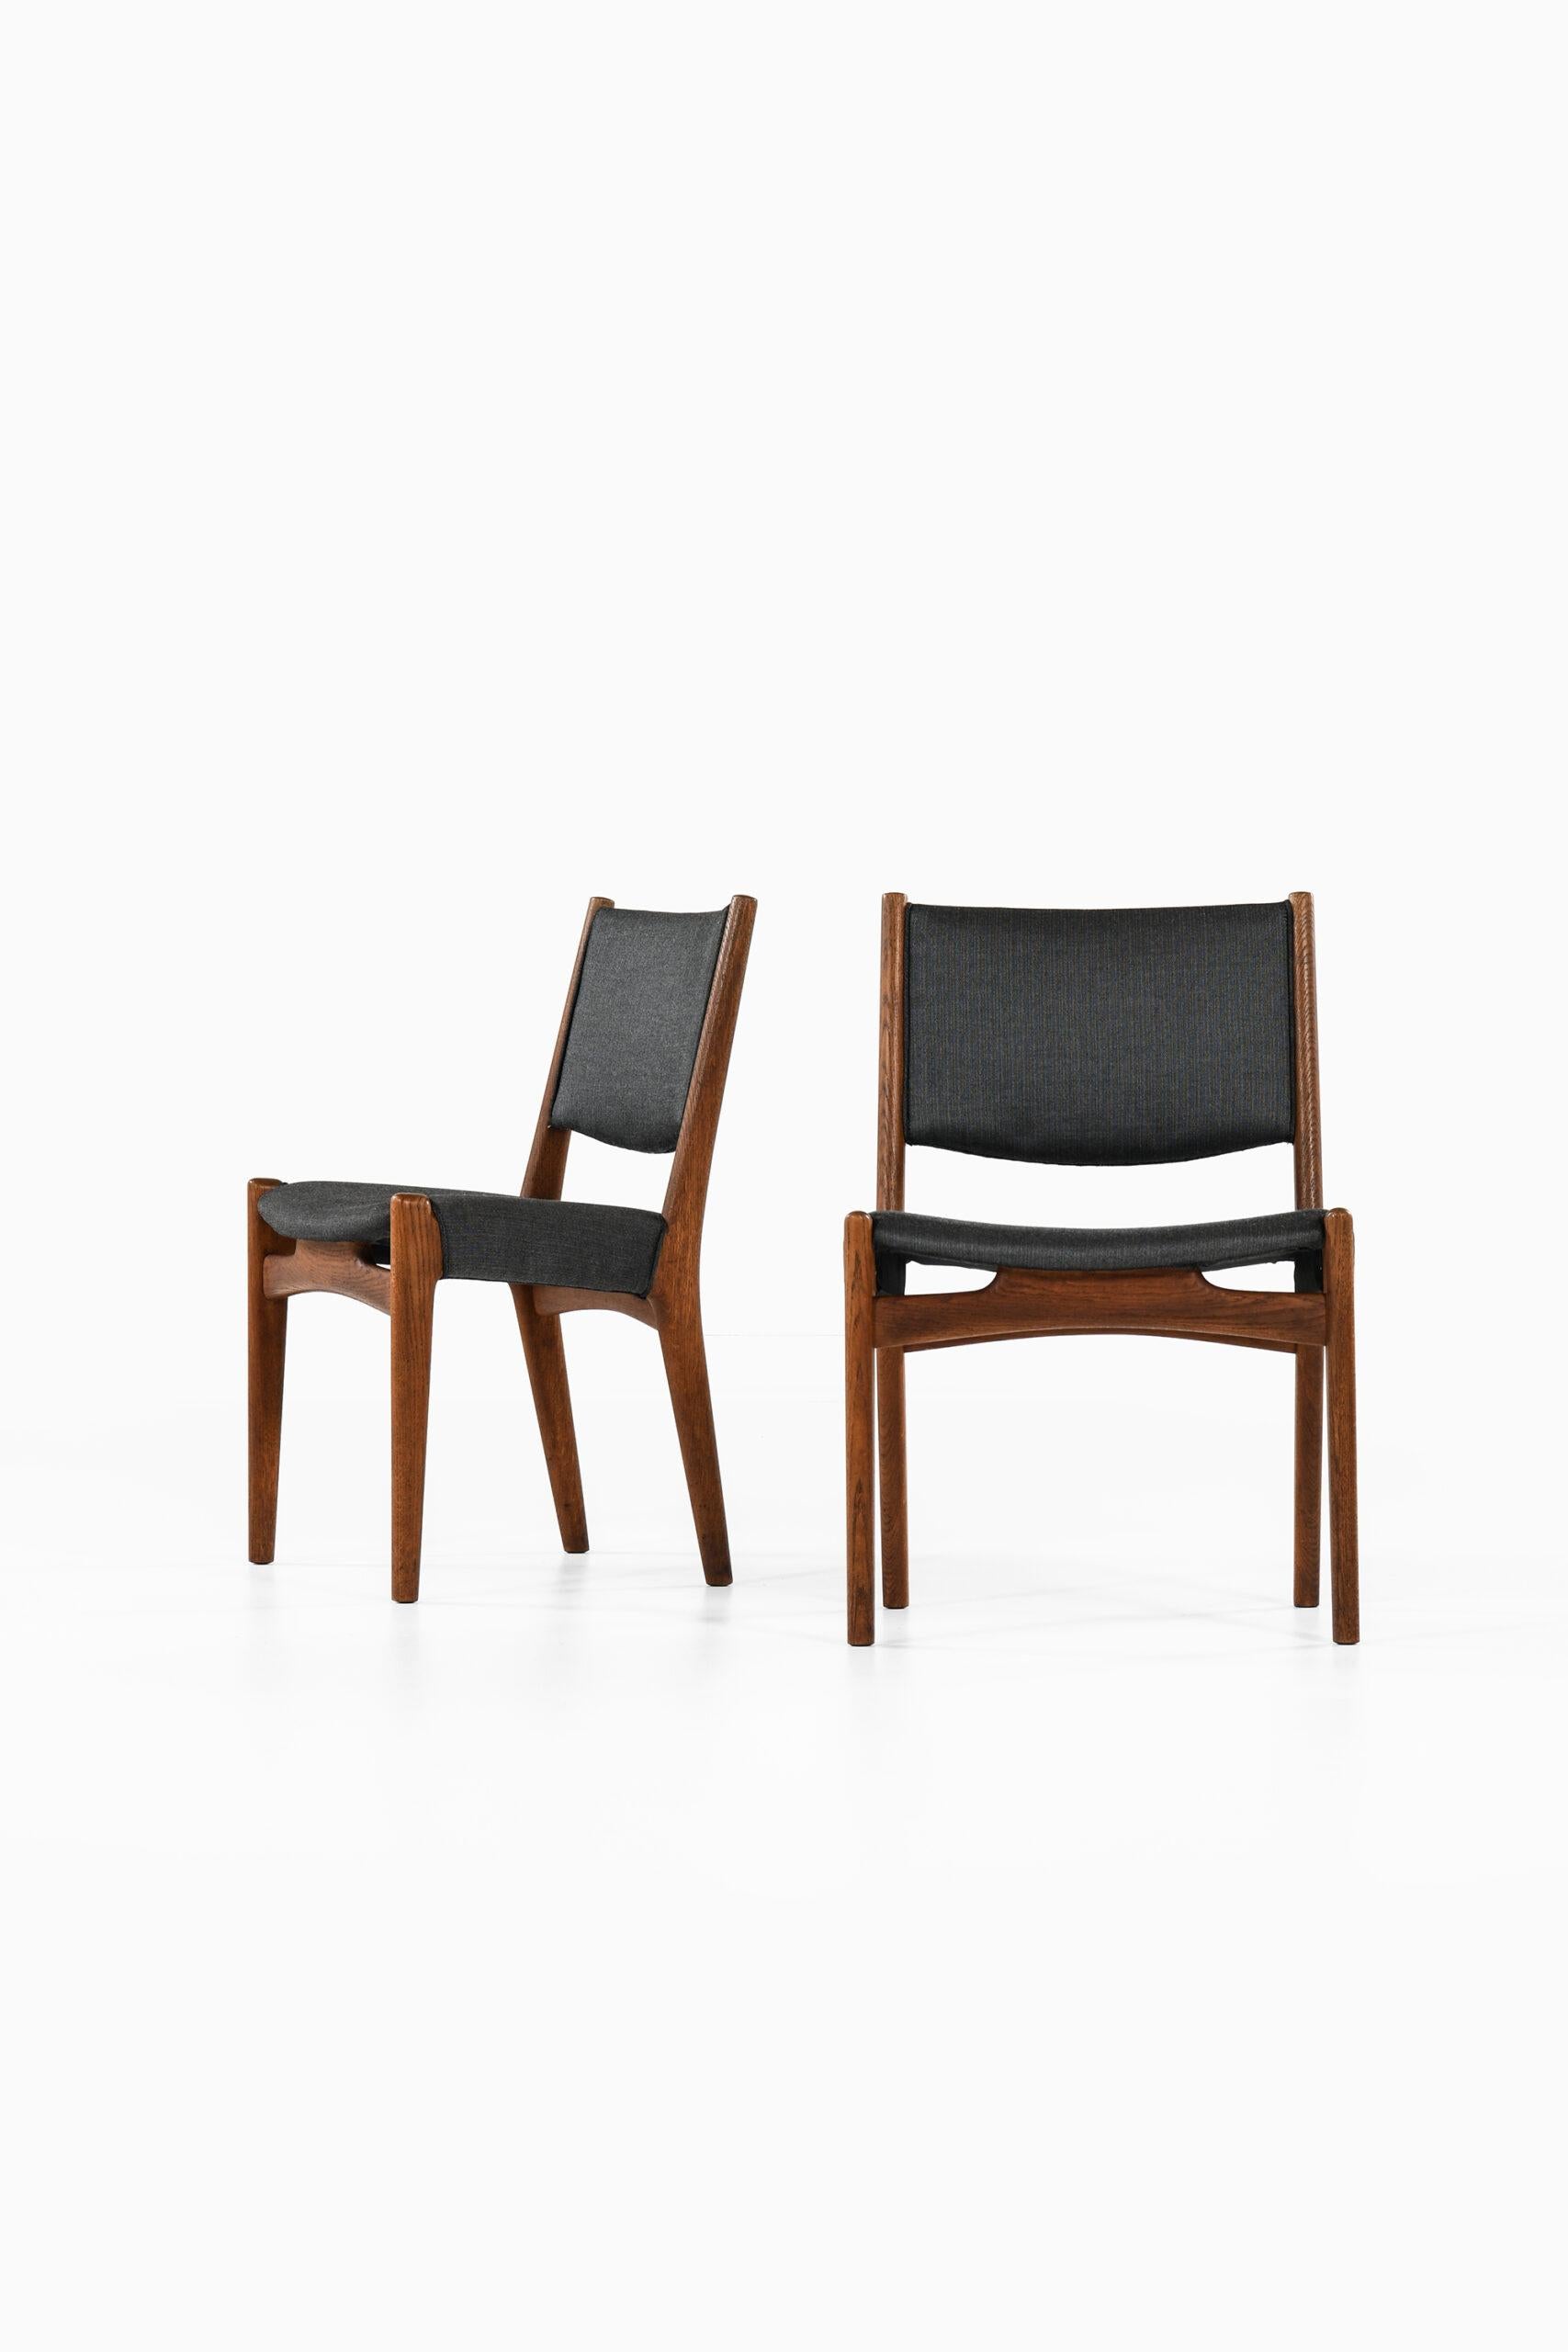 Hans Wegner Dining Chairs by Cabinetmaker Johannes Hansen in Denmark For Sale 4